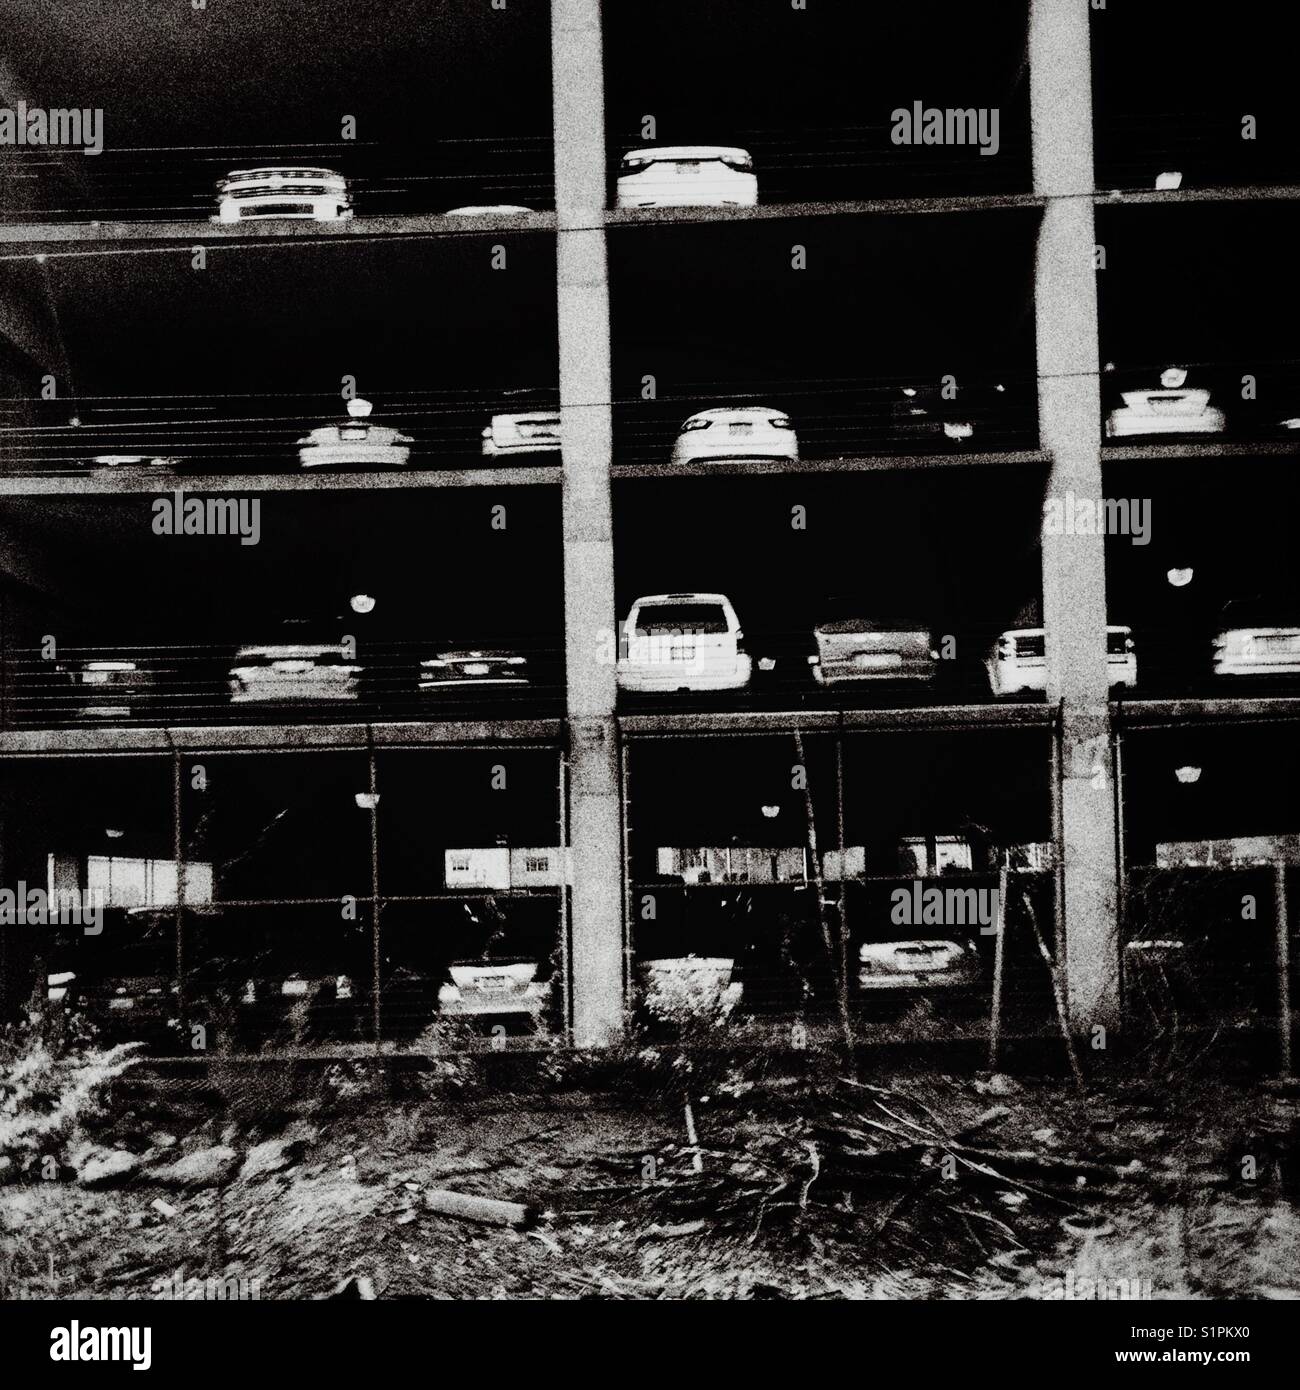 Ein schwarz-weiß Bild von Autos auf mehrere Ebenen einer Parkgarage Stockfoto